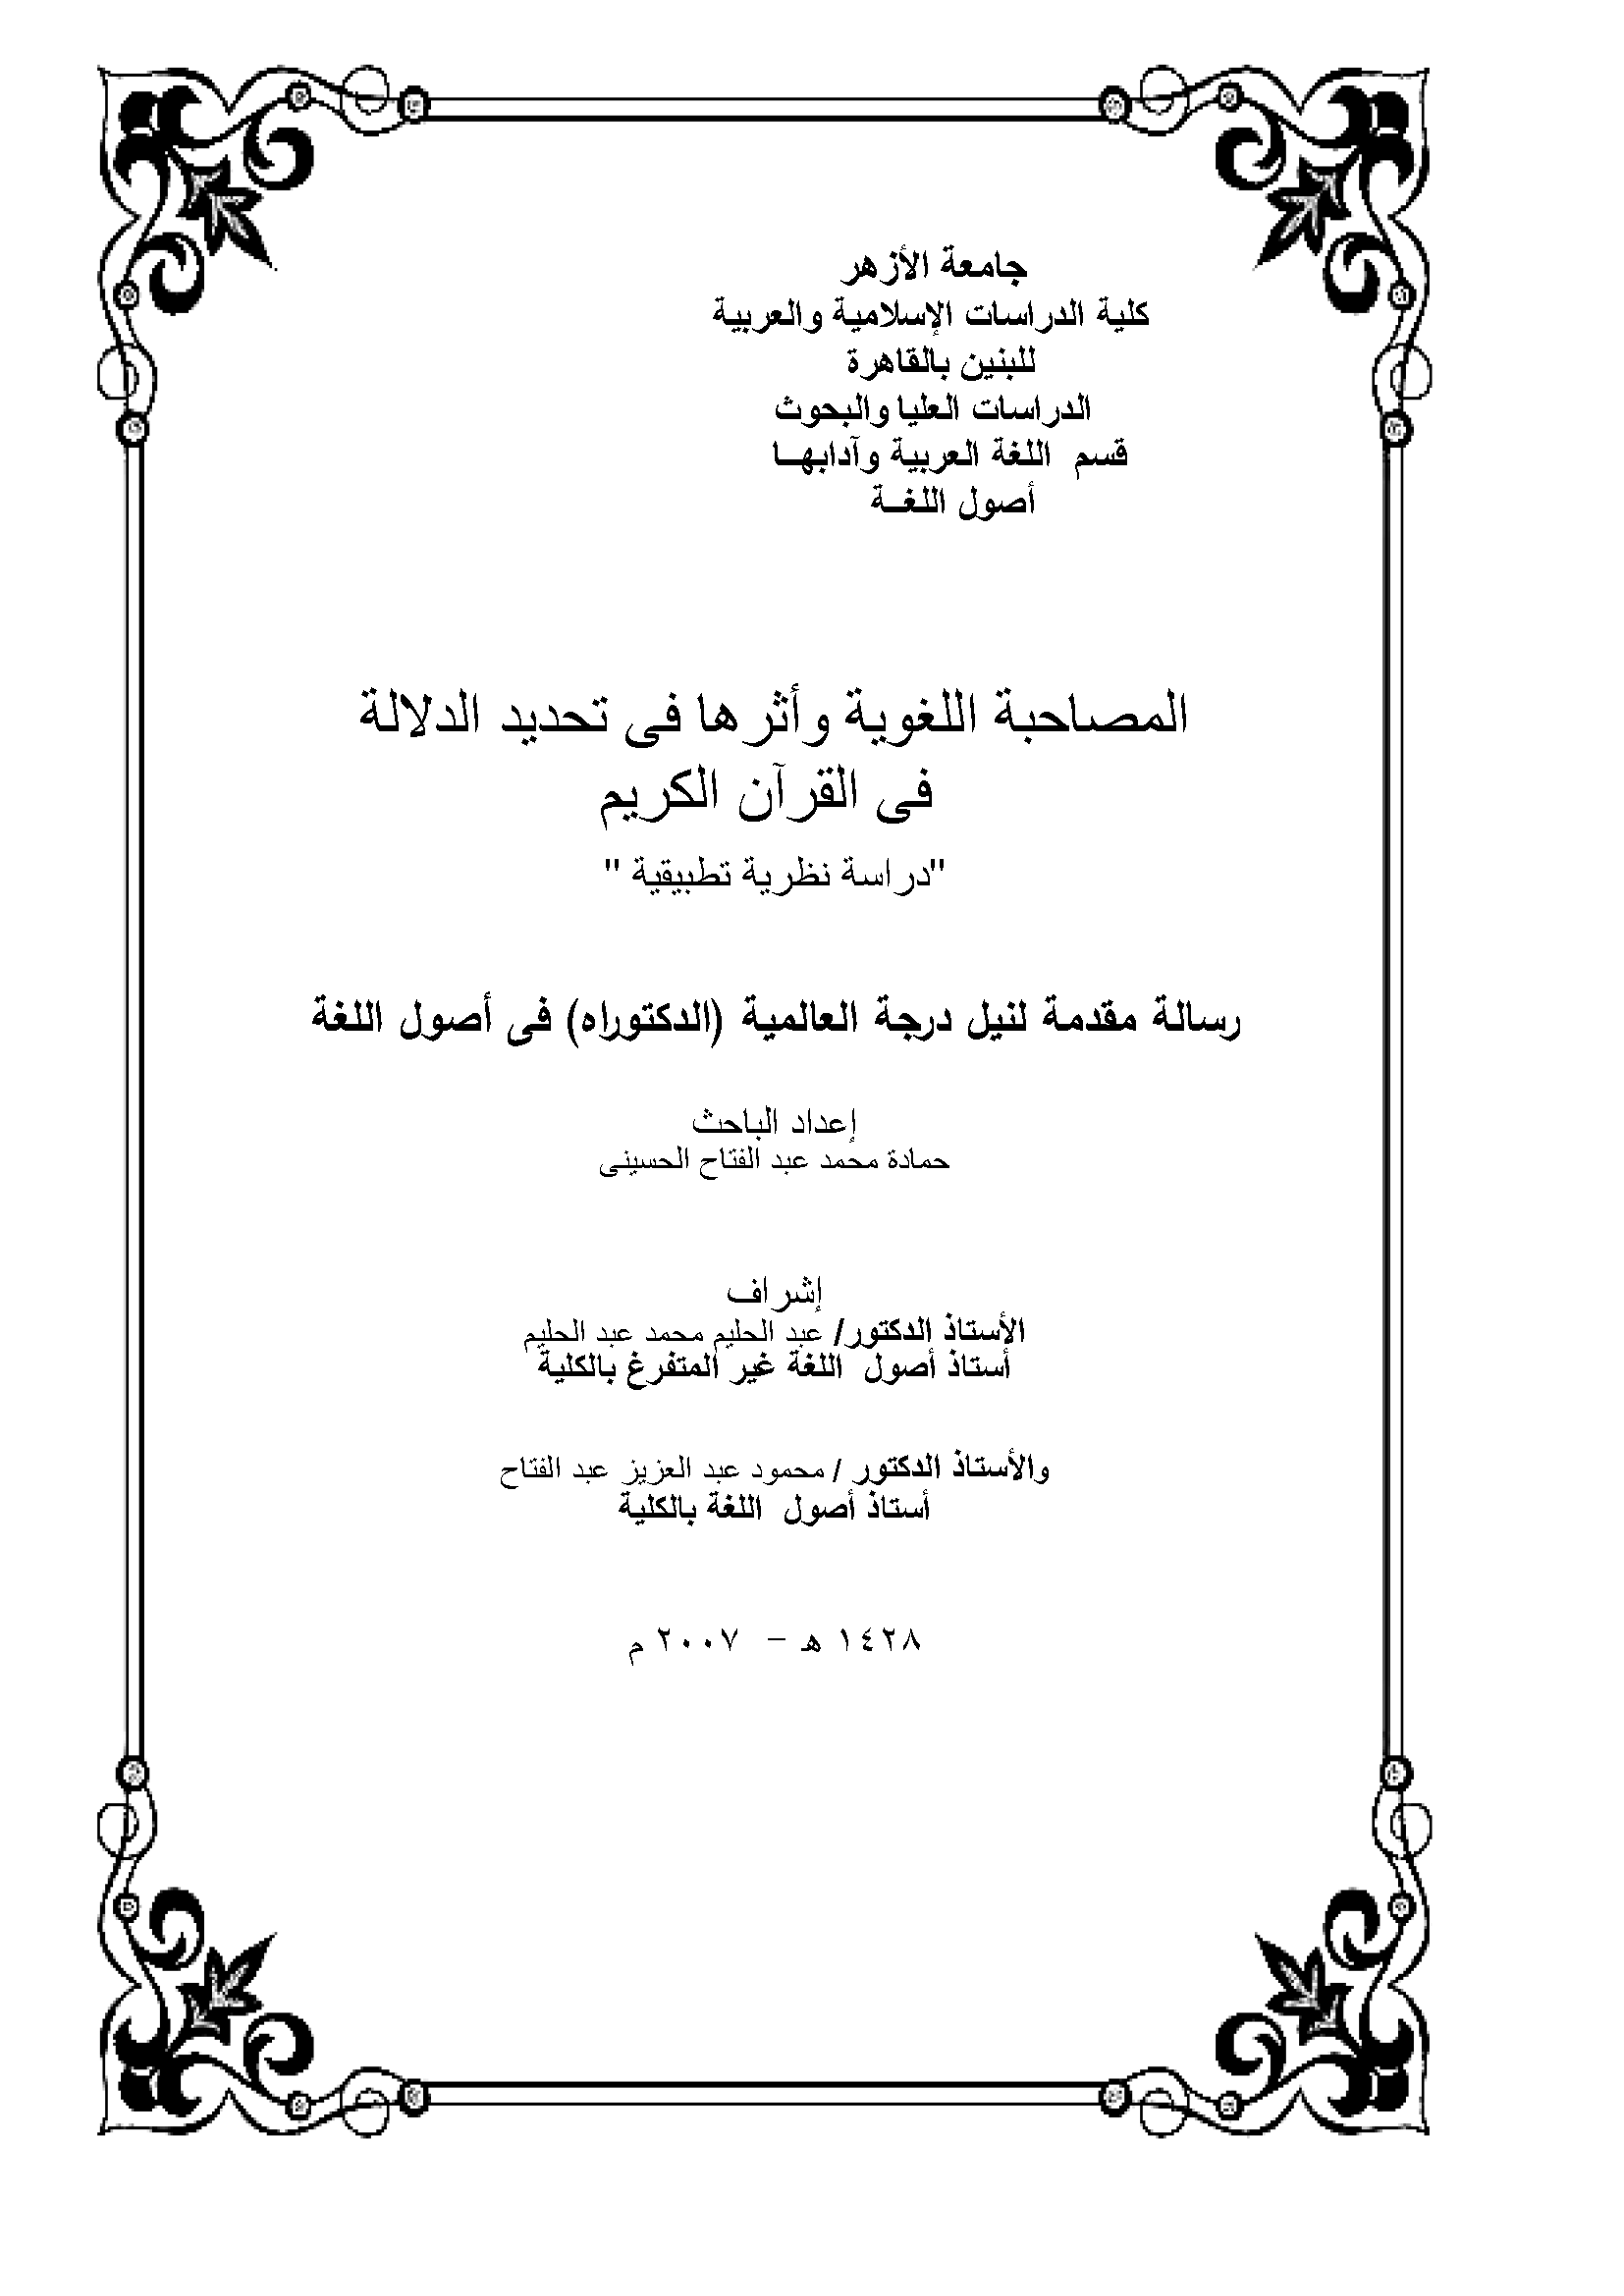 المصاحبة اللغوية وأثرها في تحديد الدلالة في القرآن الكريم - دراسة نظرية تطبيقية